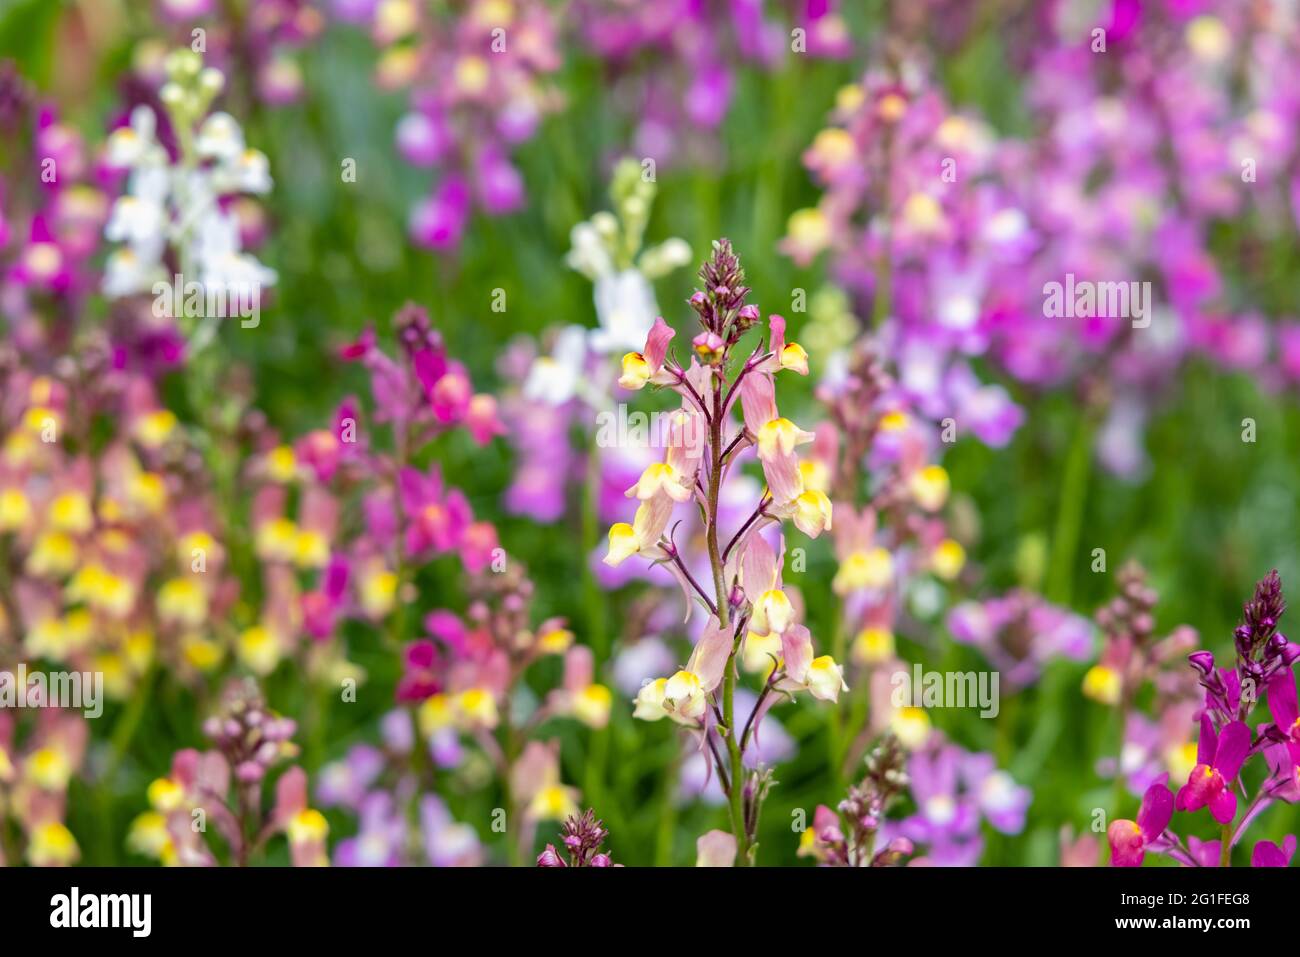 Gemischte Farben der jährlichen Einstreu-Pflanze Linaria maroccana, Linaria 'Northern Lights' blüht im späten Frühjahr bis zum Frühsommer in einem Garten in Surrey Stockfoto